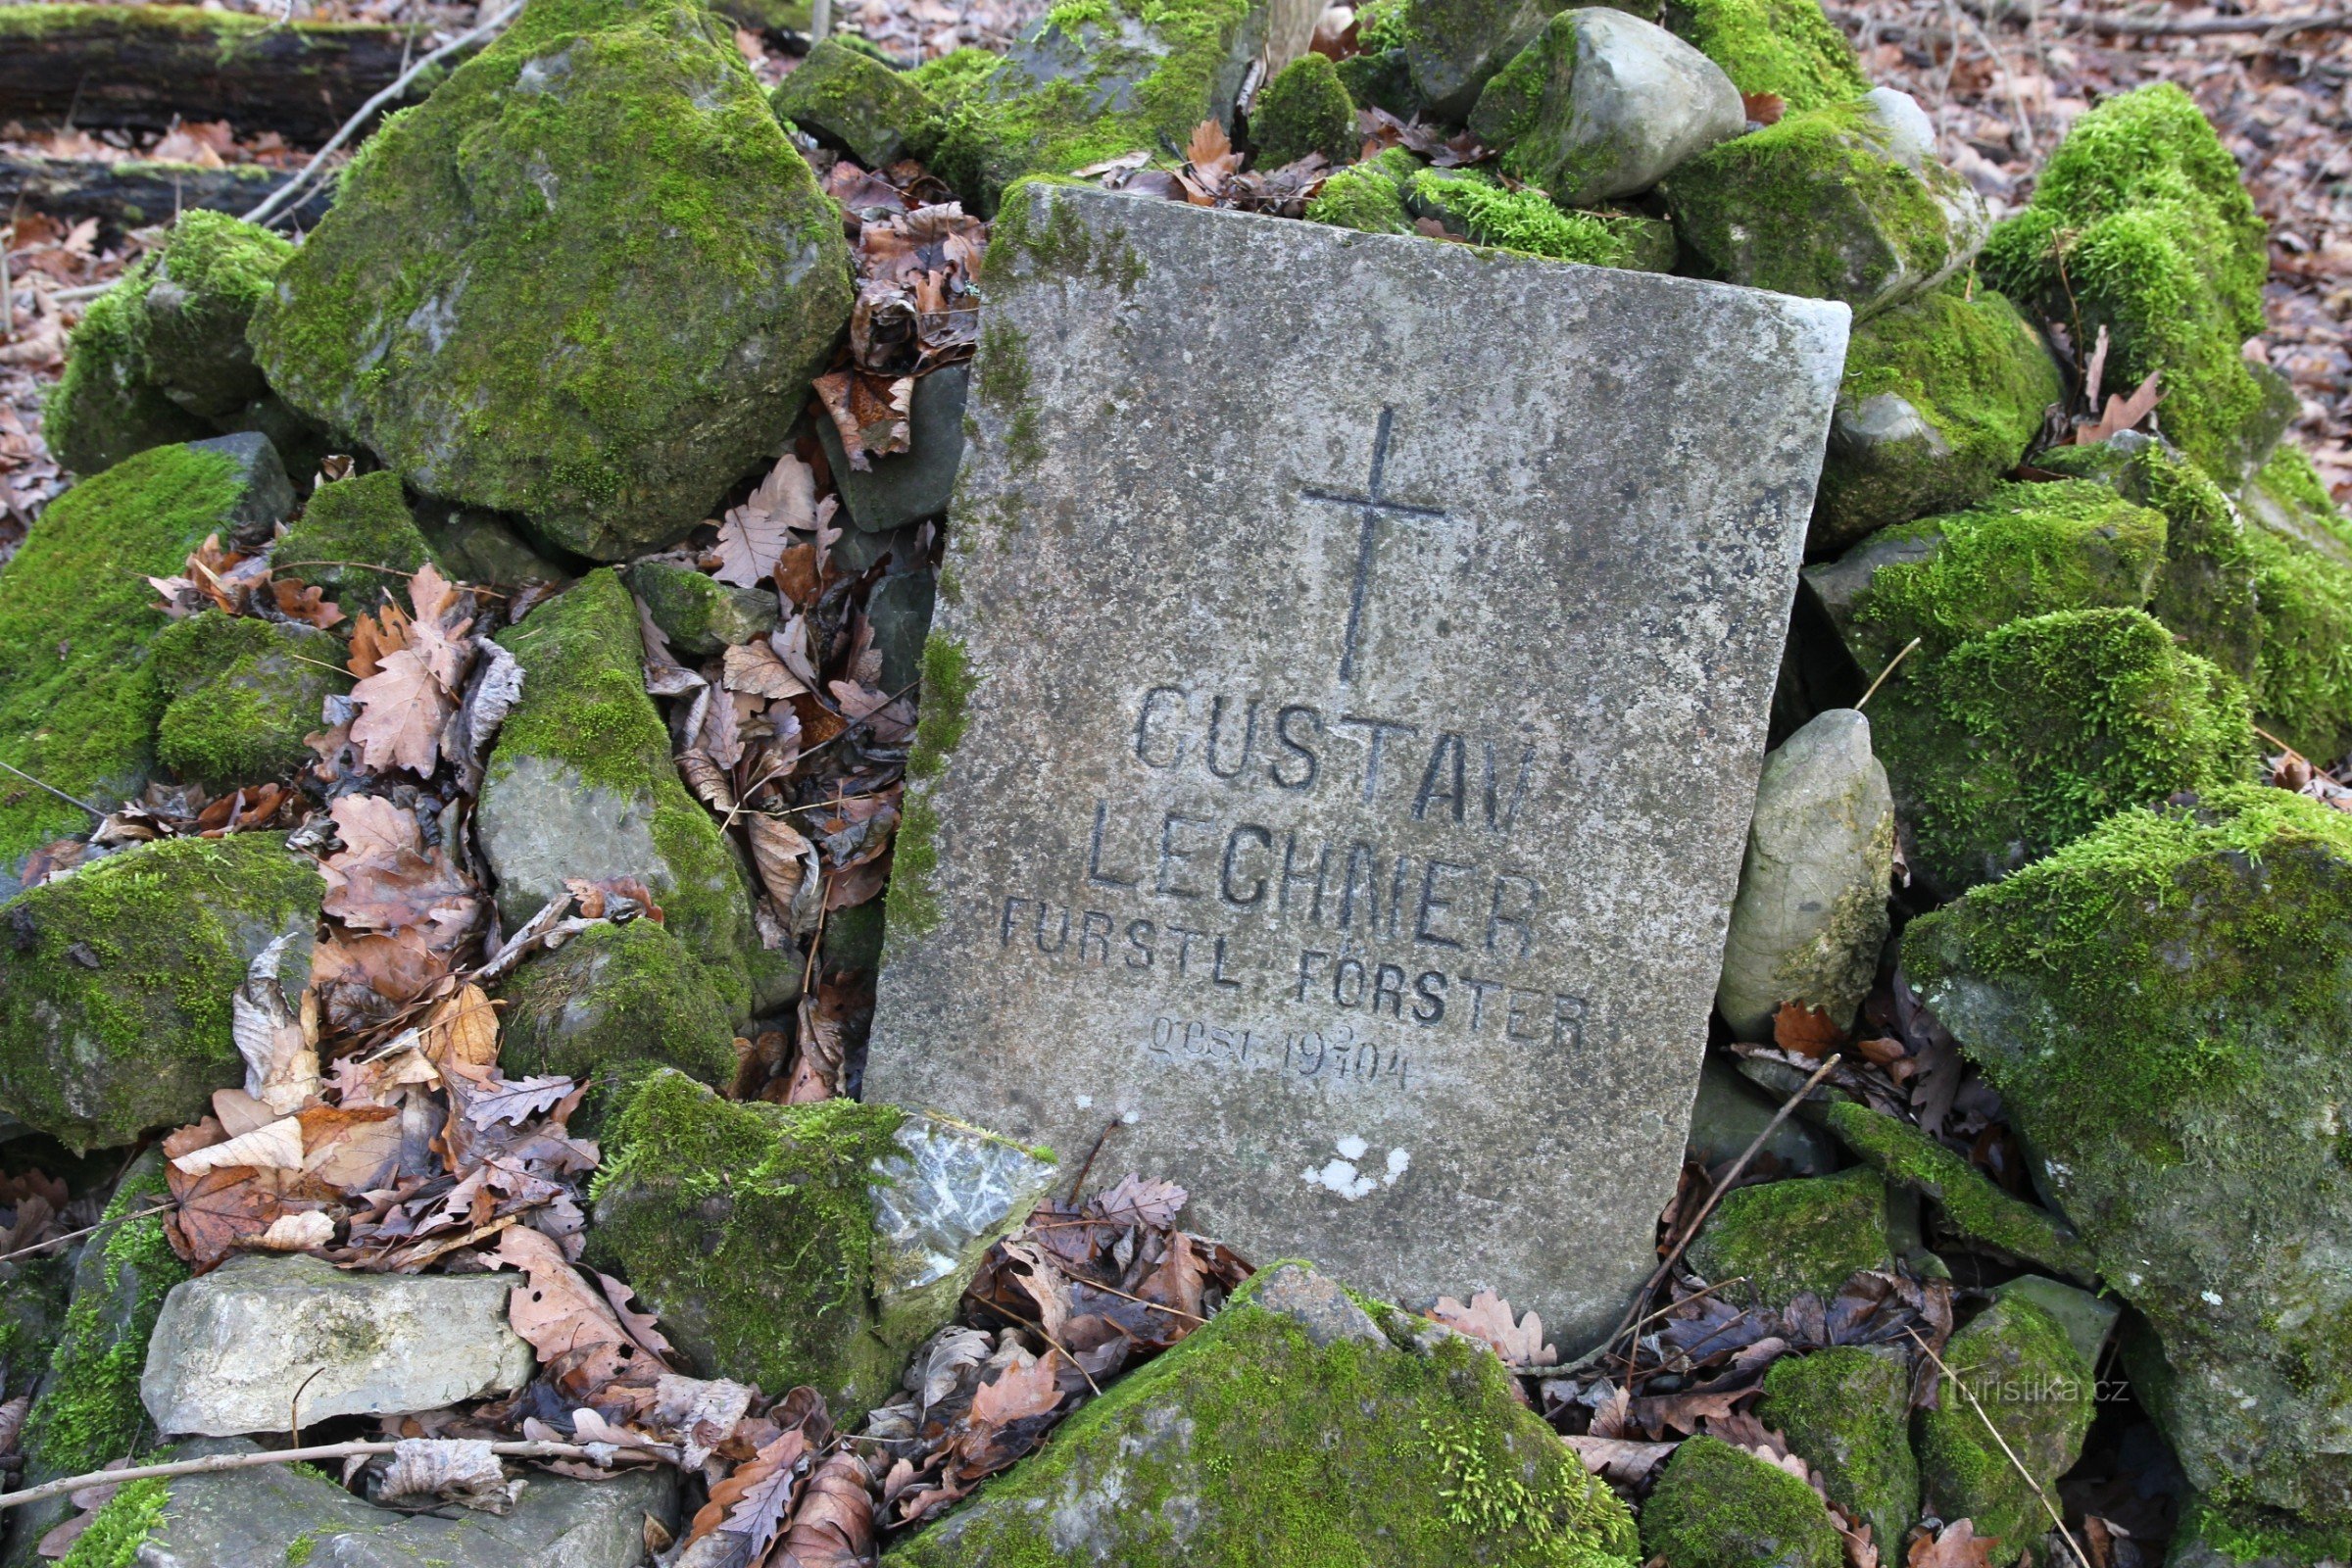 Monument to Gustav Lechner